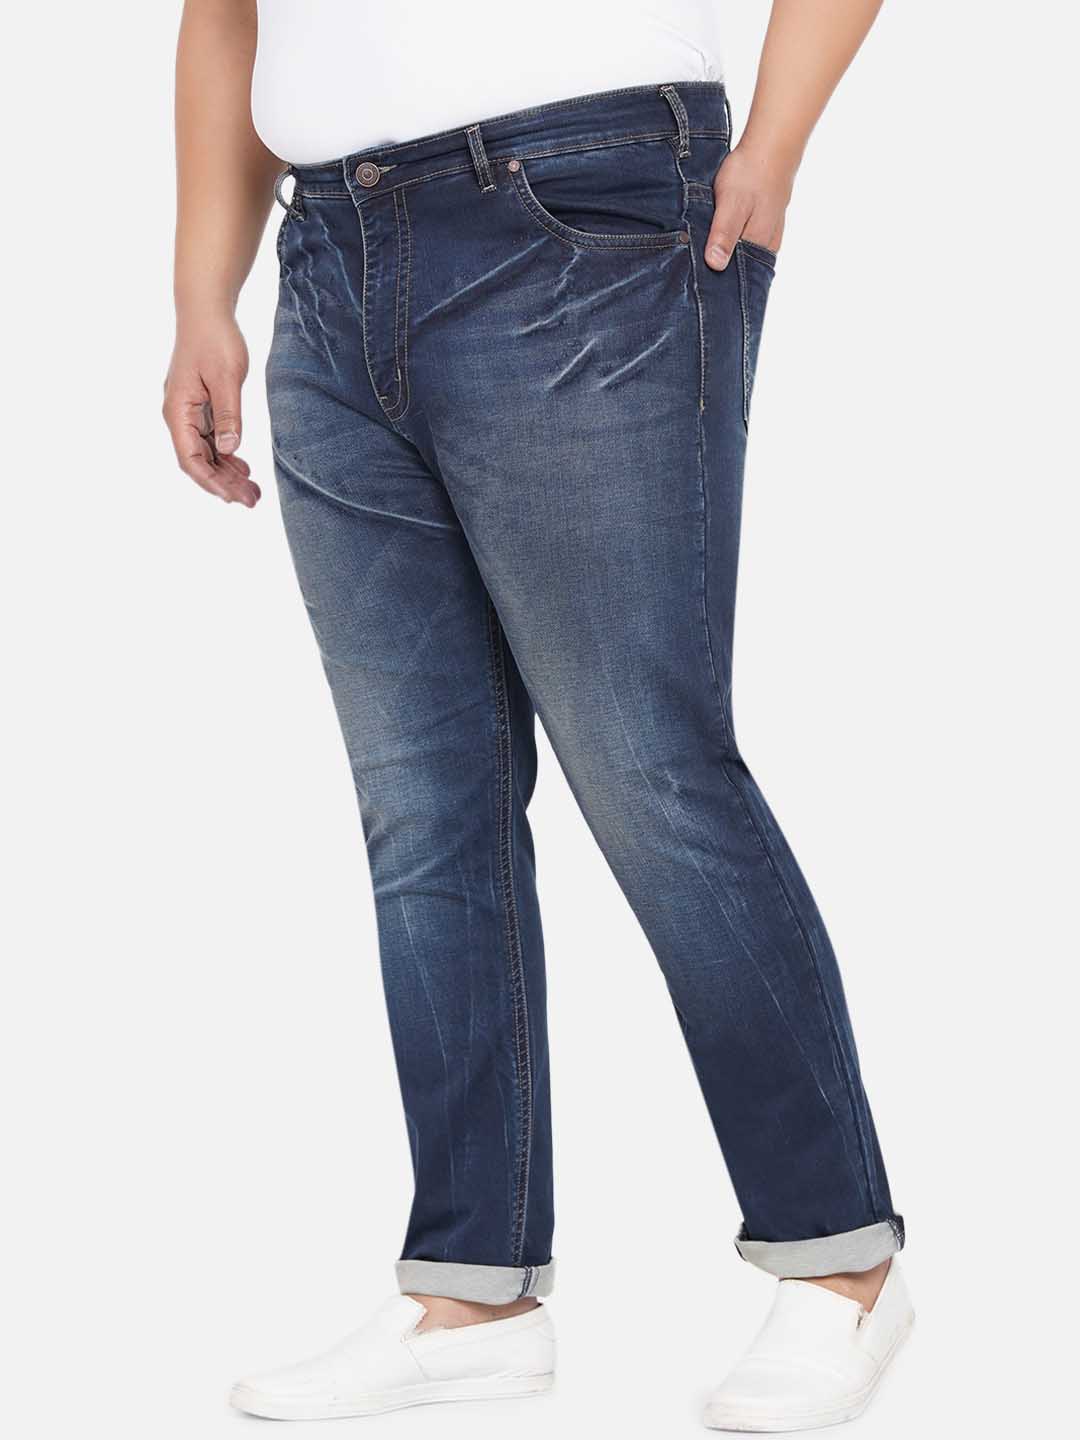 bottomwear/jeans/JPJ12236/jpj12236-4.jpg